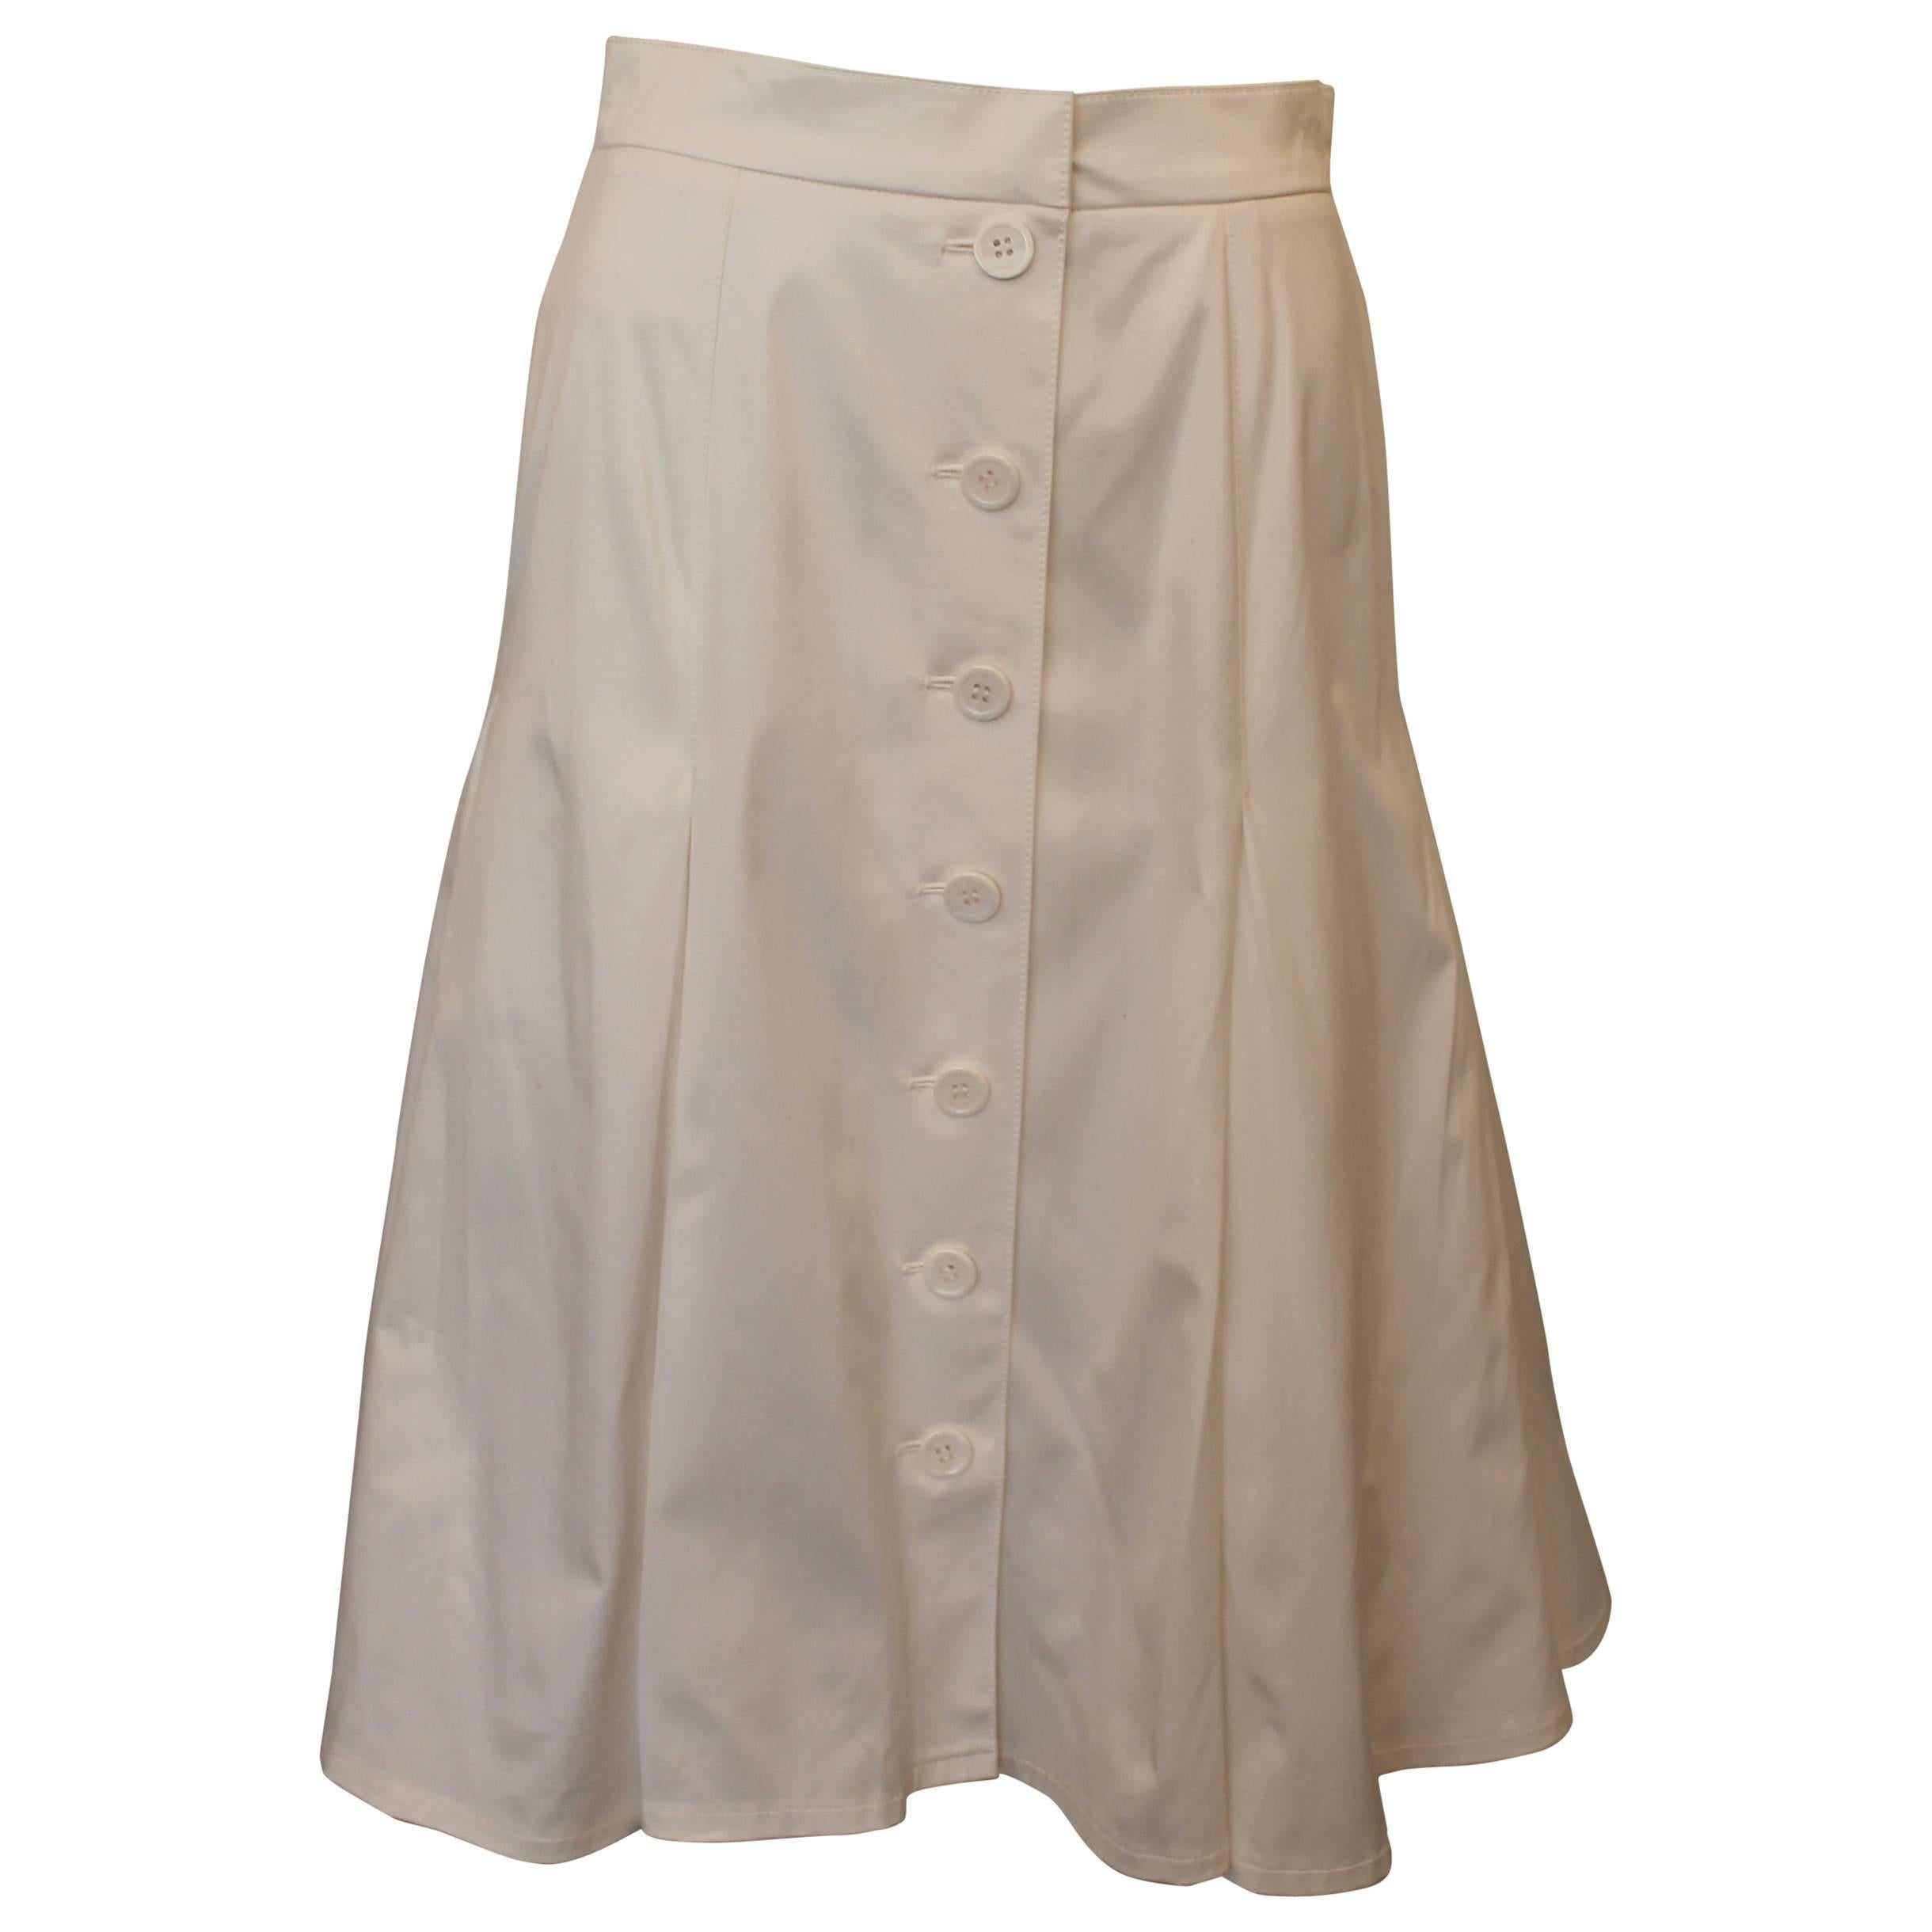 Oscar de la Renta White Cotton Tea Length Skirt with Pleats and Buttons - 6